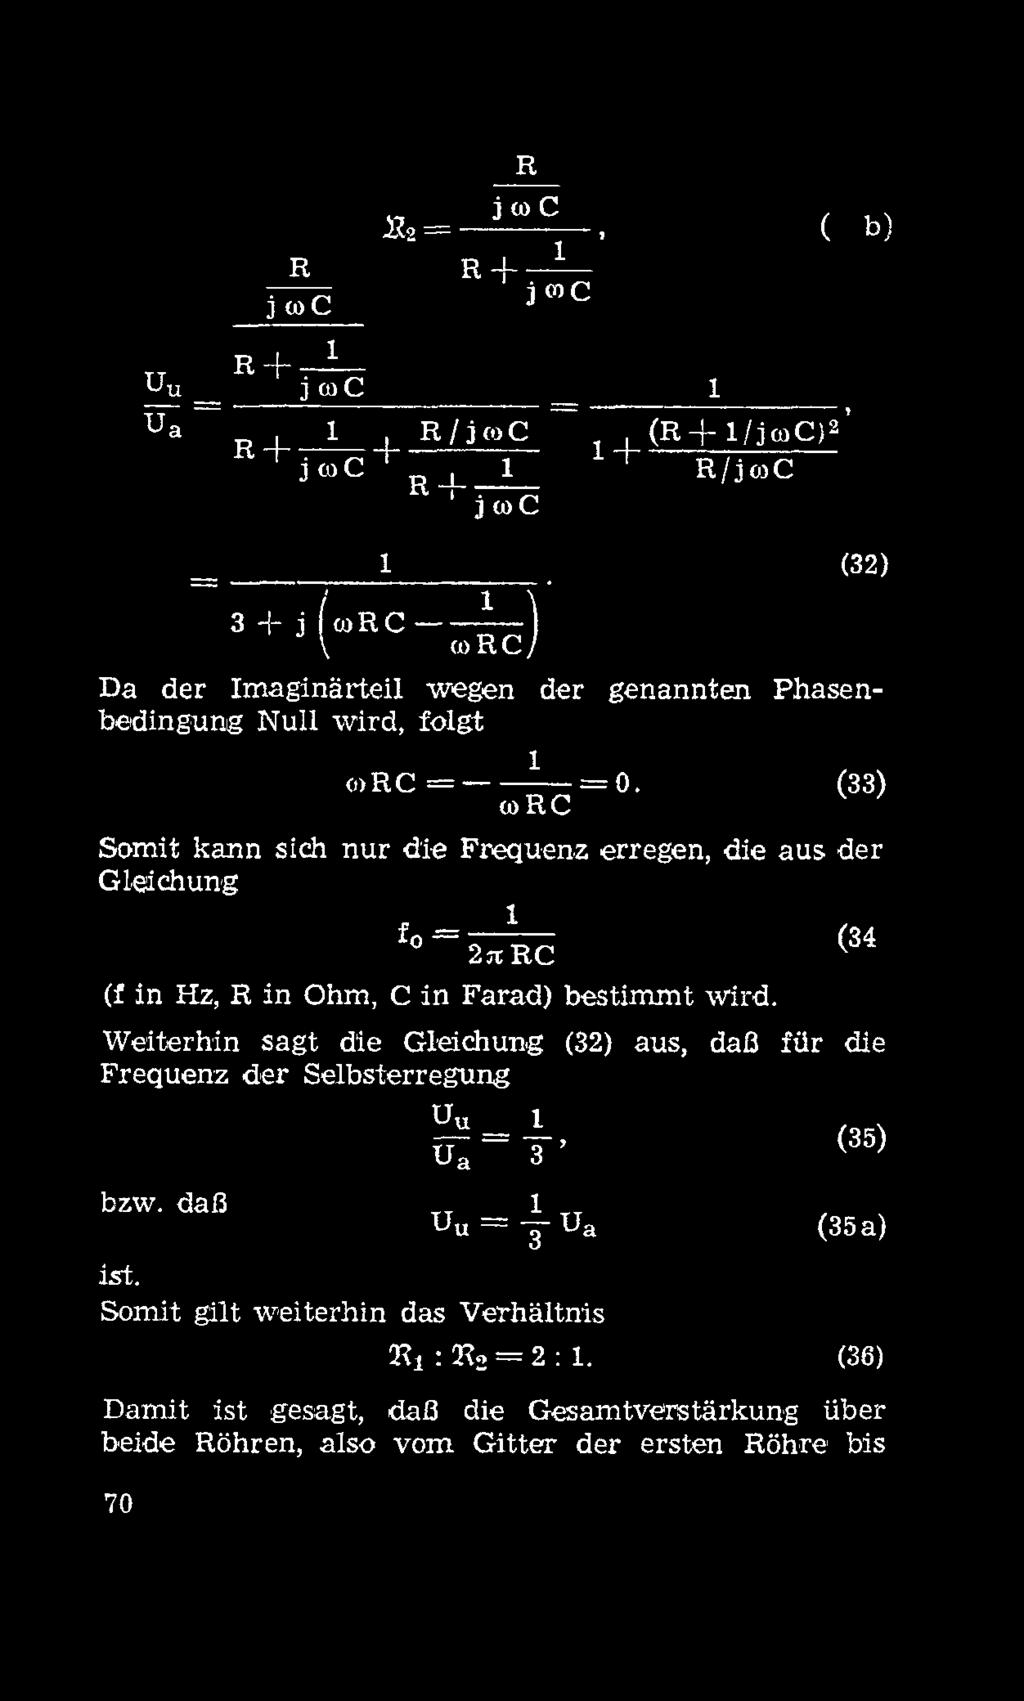 wrc (33) Somit kann sich nur die Frequenz erregen, die aus der Gleichung f0 = 1 2hRC (f in Hz, R in Ohm, C in Farad) bestimmt wird.